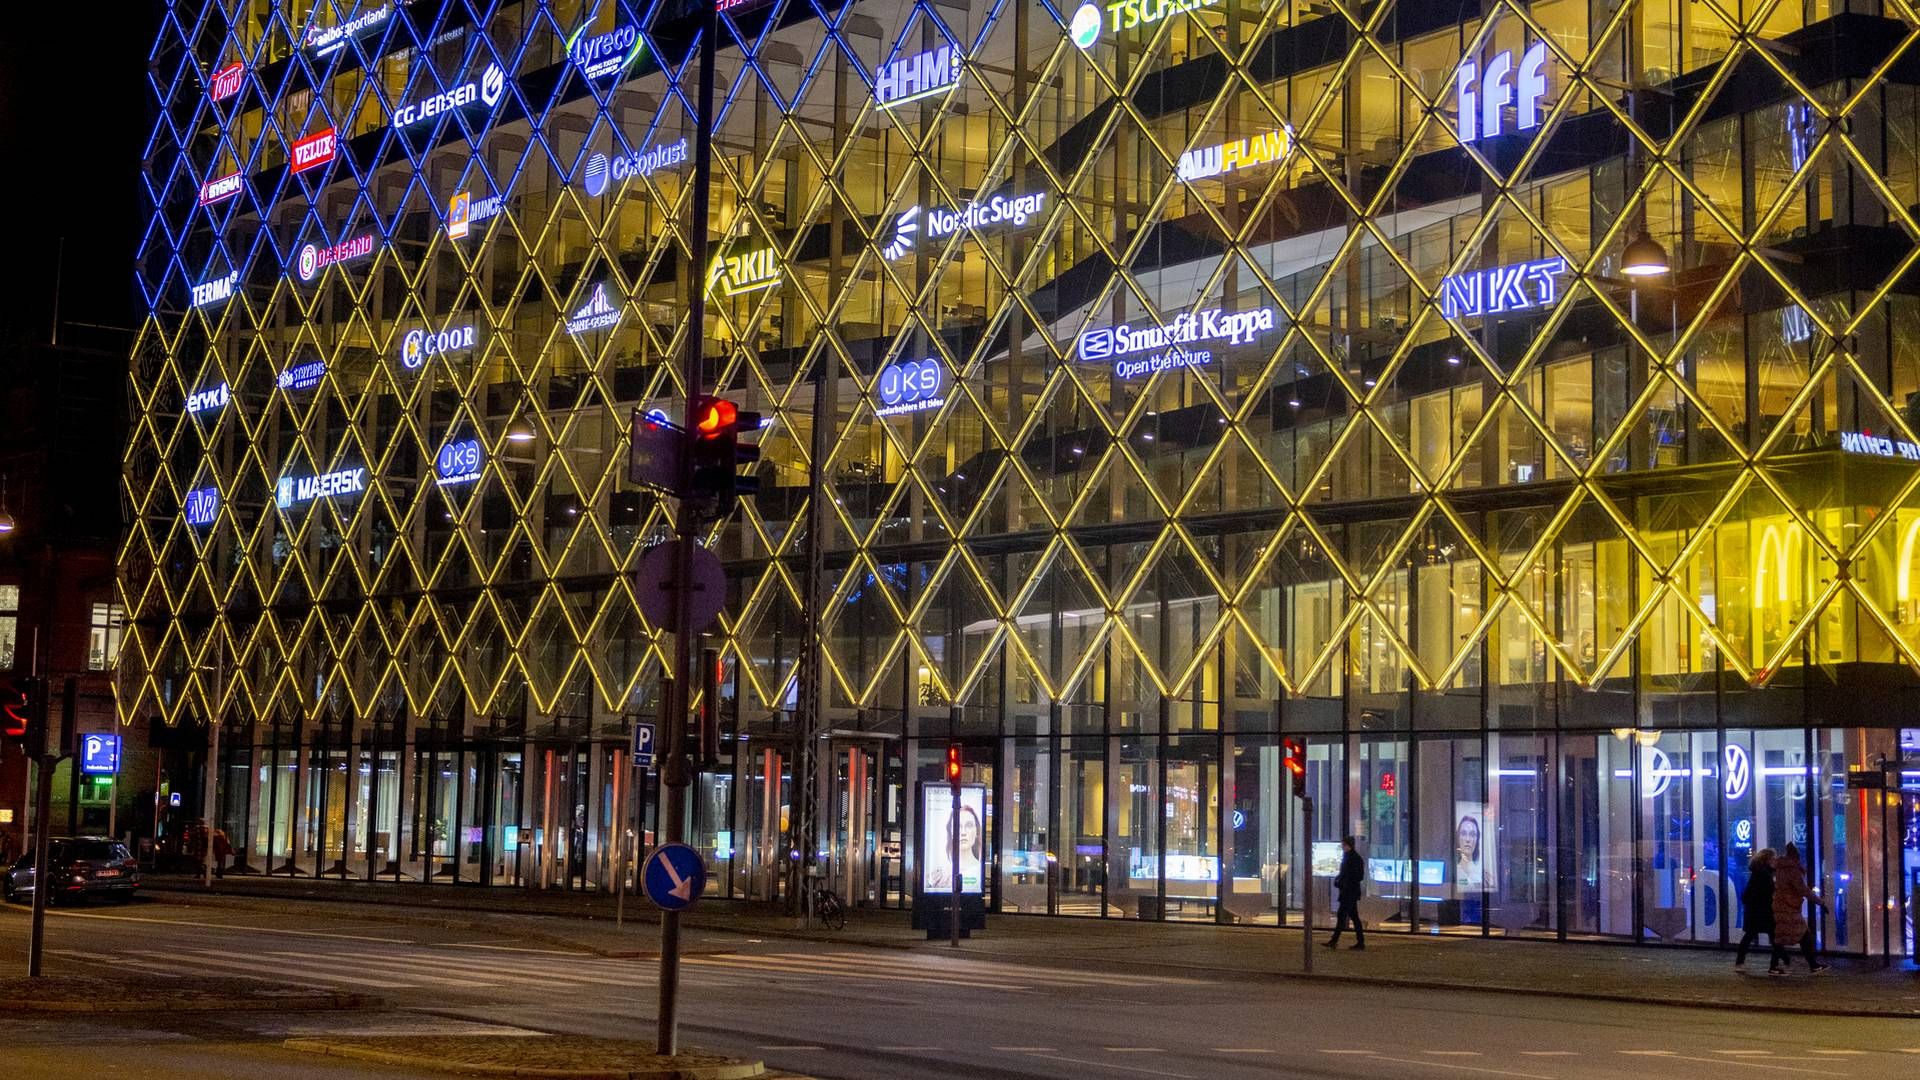 DI's hovedkvarter oplyst af de ukrainske gule og blå farver. | Foto: Mads Nissen